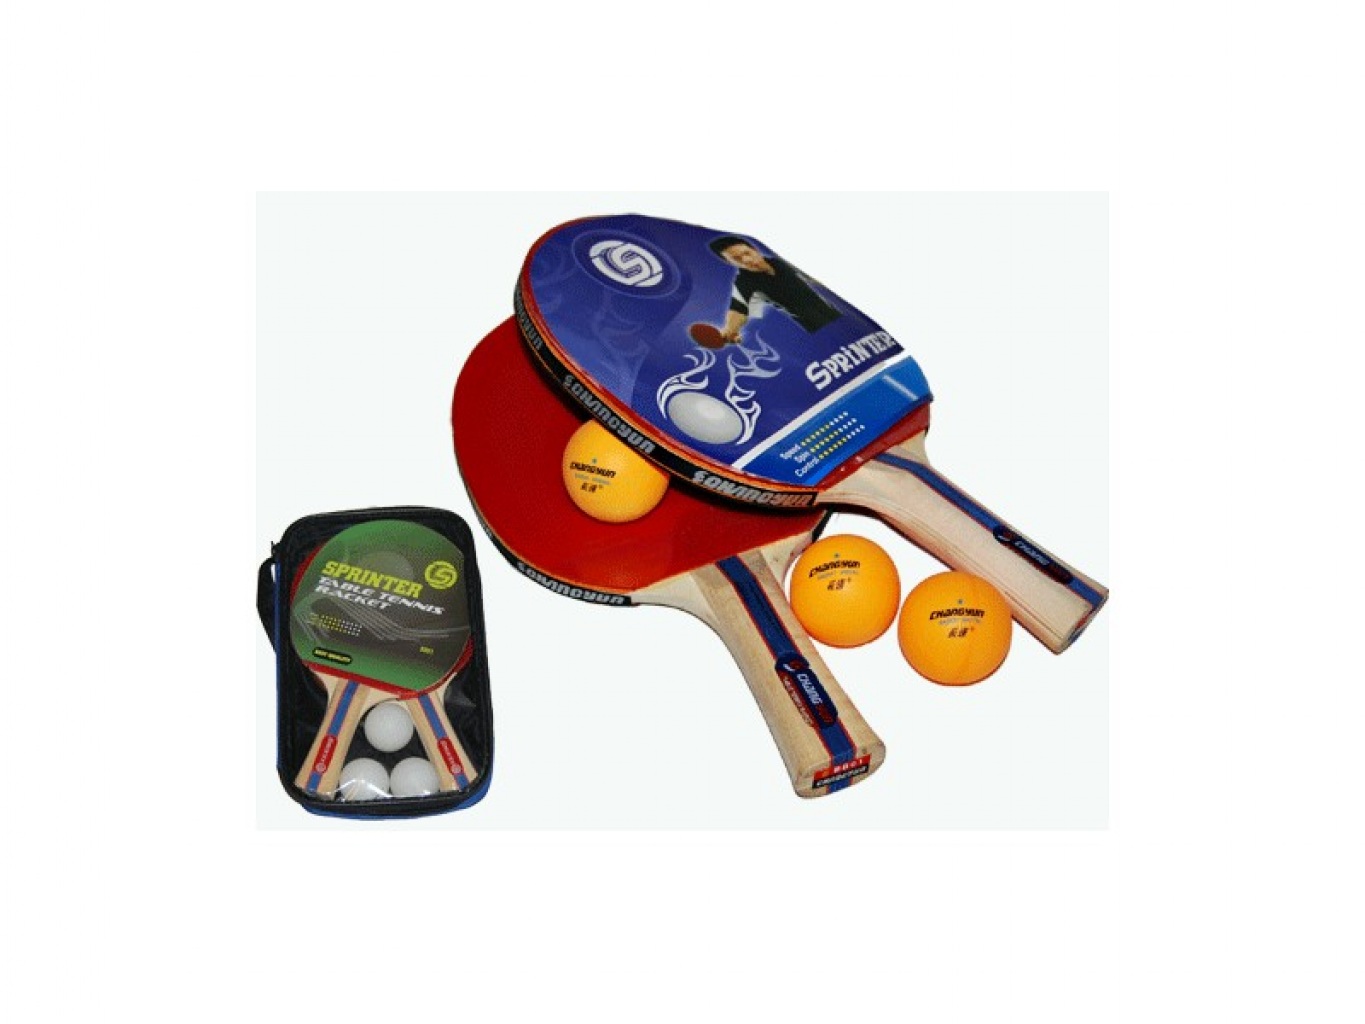 Ракетки для тенниса набор. Набор для настольного тенниса (2 ракетки 3 шарика) sh-008a. Набор для настольного тенниса (2 ракетки, 4 шарика): 1070. Набор для пинг понга Sprinter. Ракетки Спринтер для настольного тенниса.